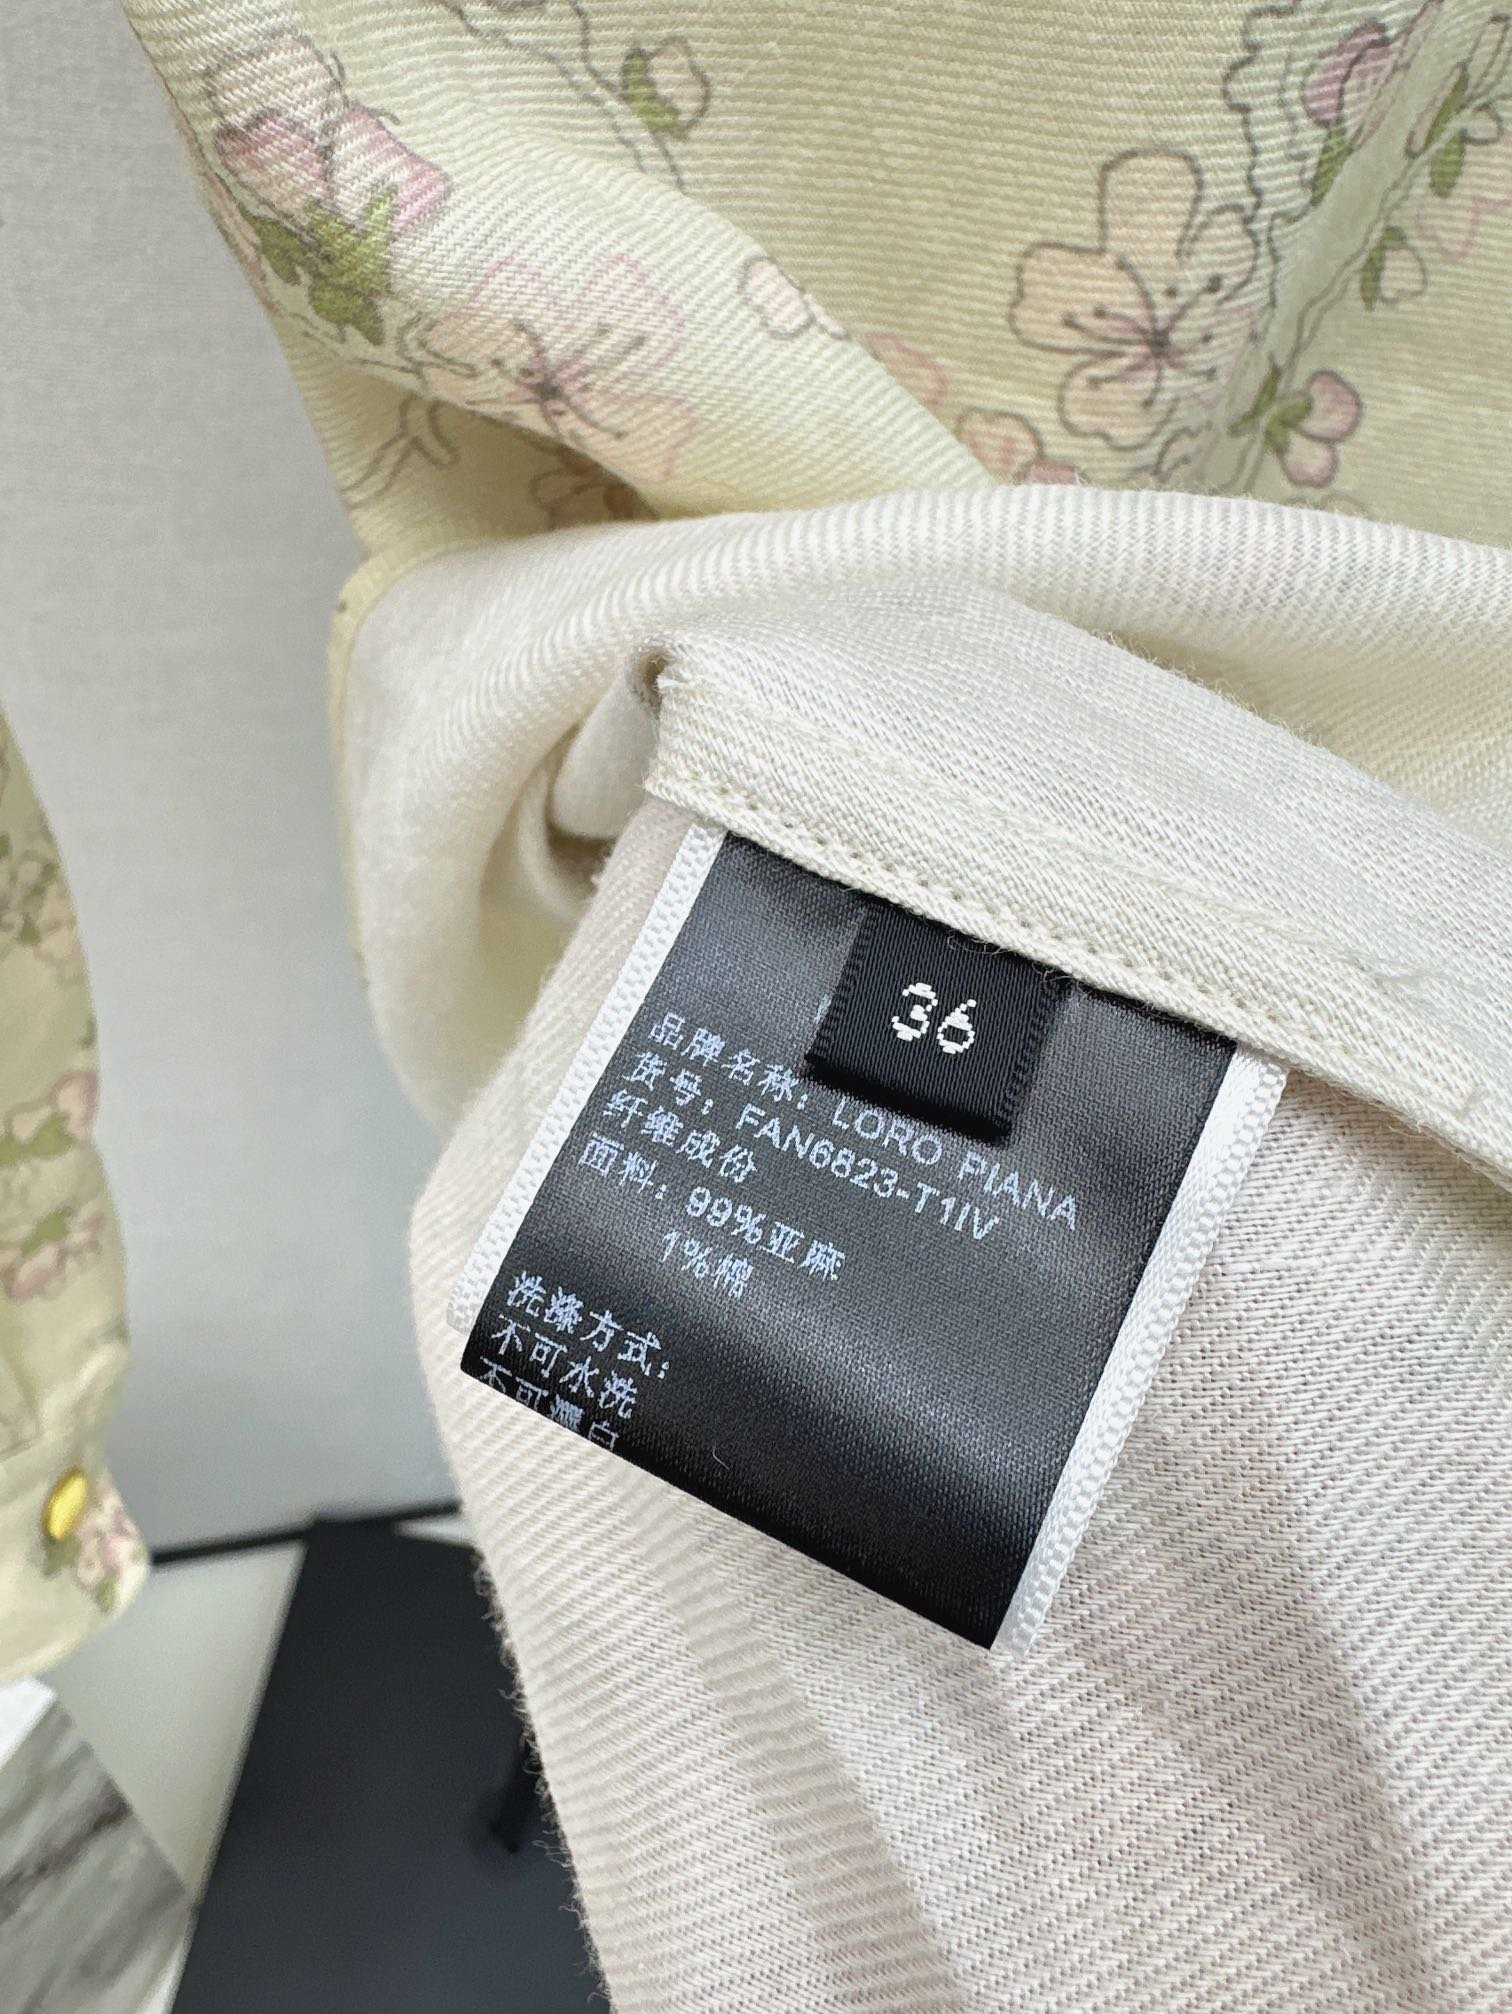 新中式24Ss春夏最新款今年流行的新中式设计感印花衬衫采用立体满身小碎花太美了精致优雅细节感在线浓浓的新